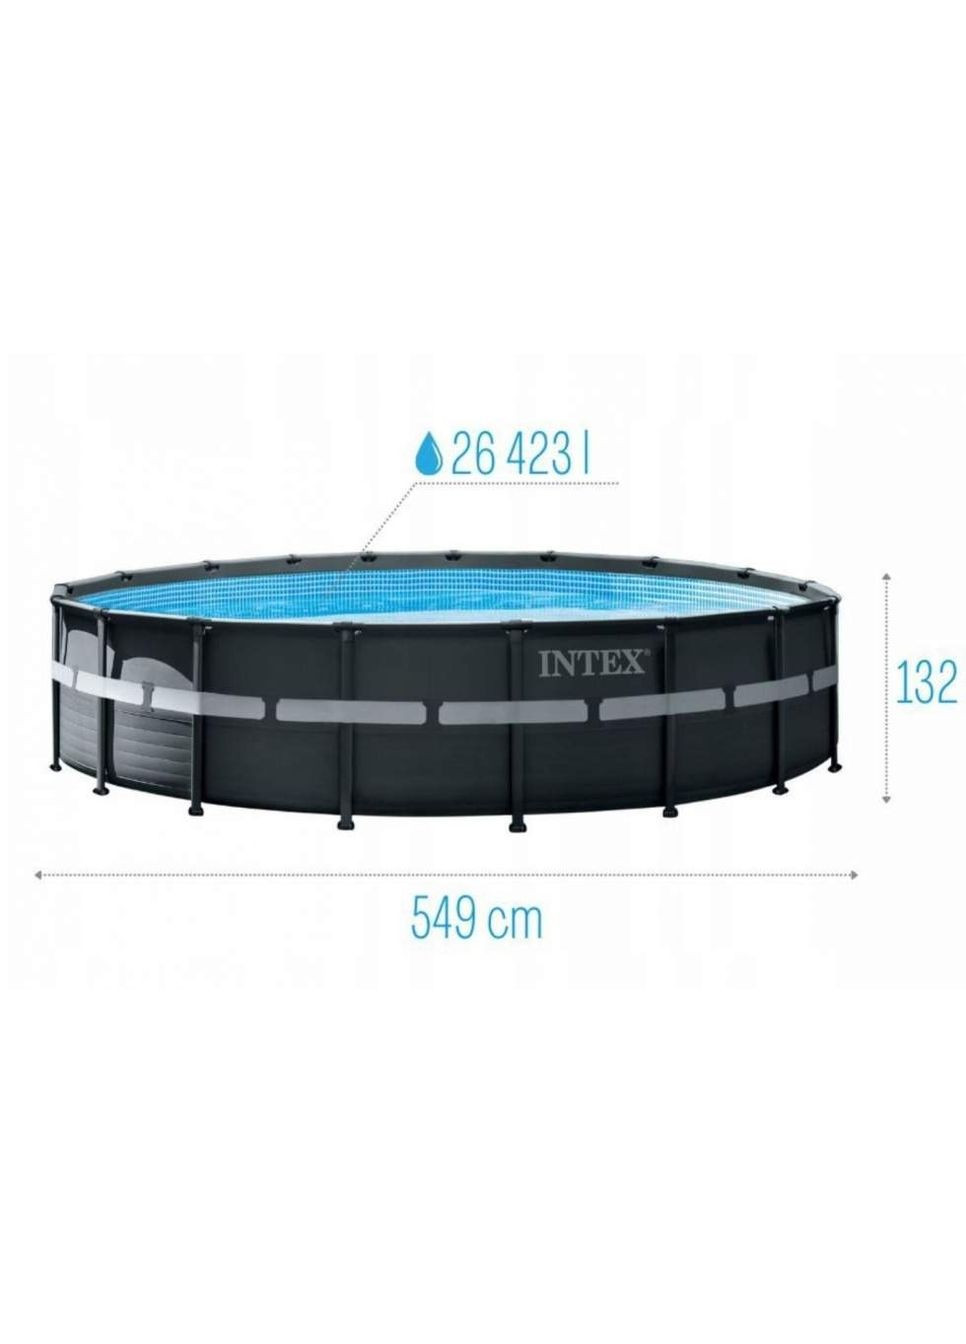 Круглый каркасный бассейн 26330 с лестницей, насосом-фильтром и скимером, 549x132см 26423л Intex (280900303)